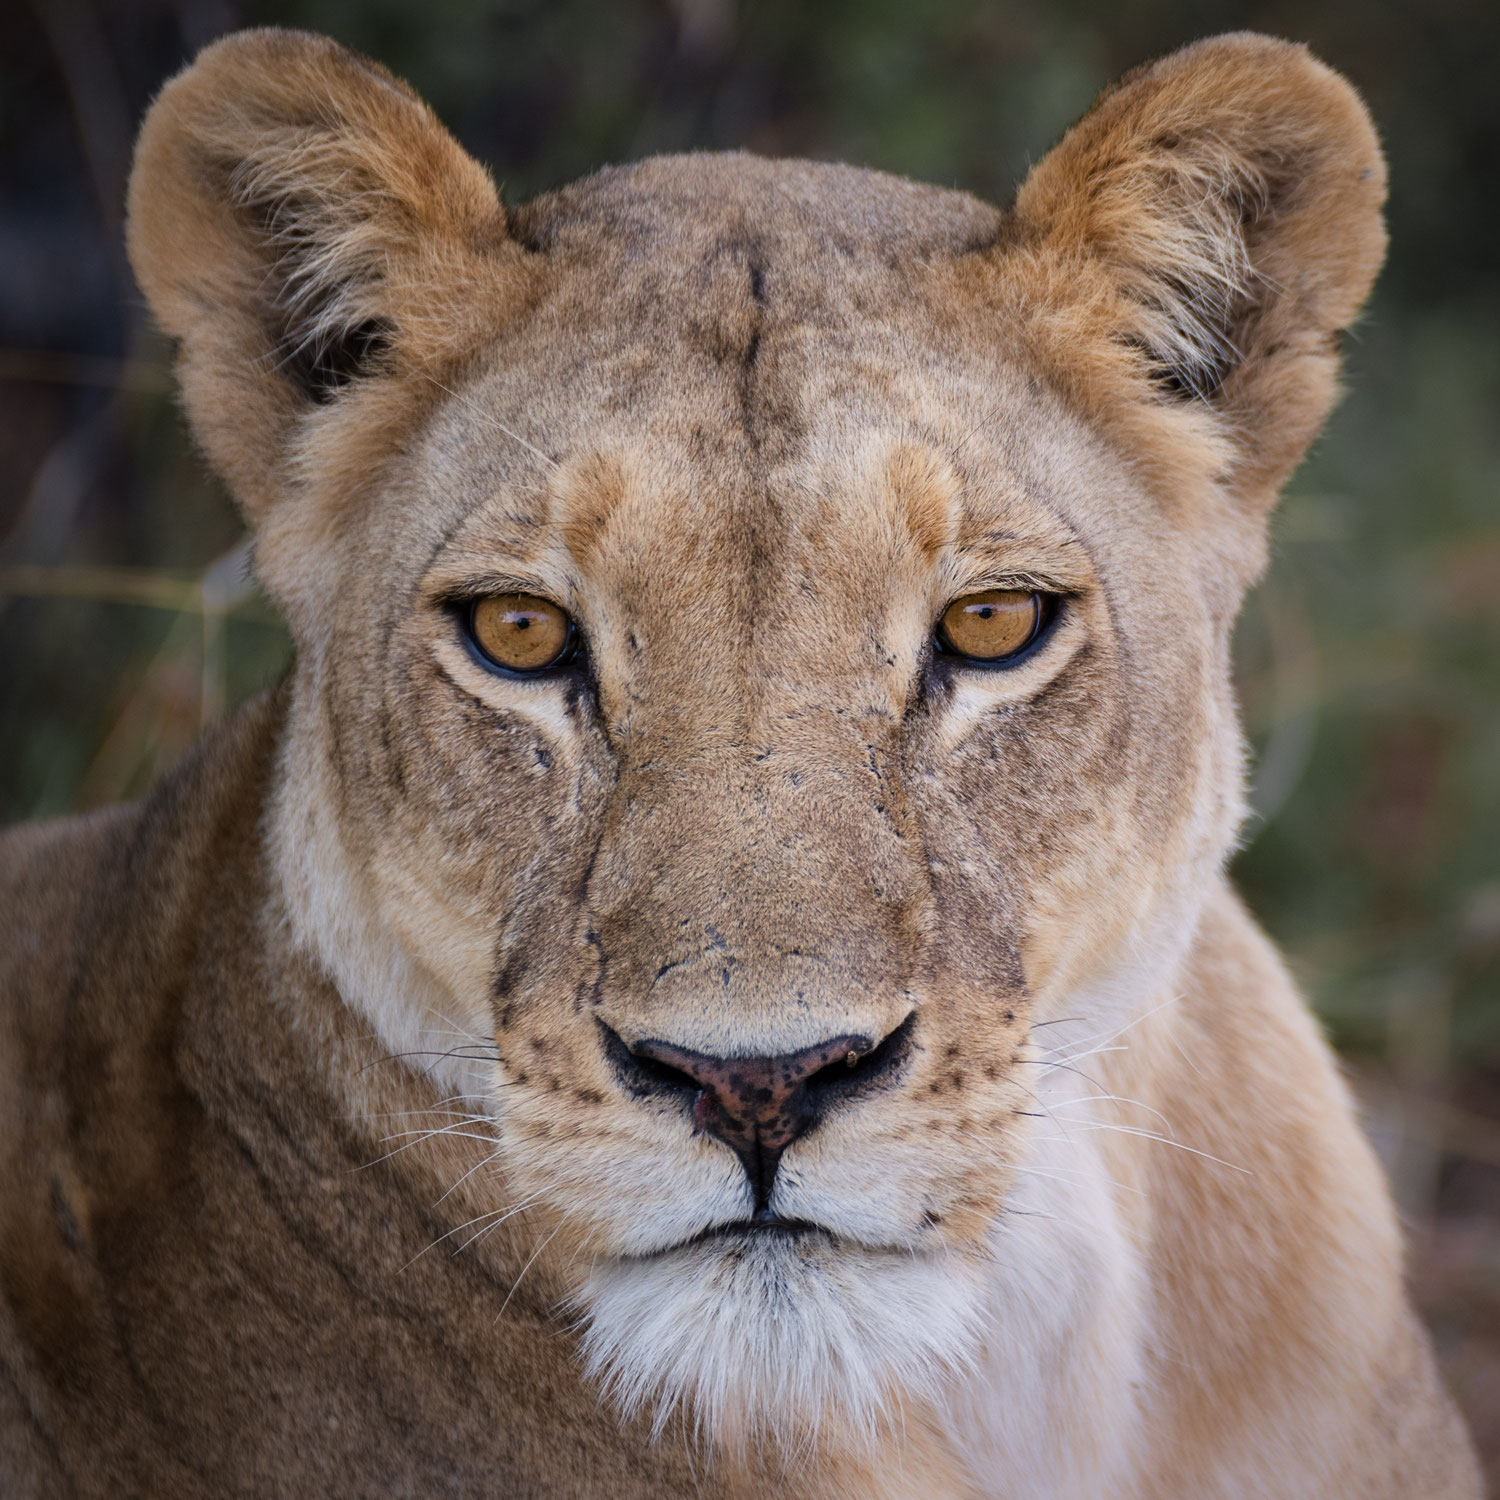 reisebericht rundreise botswana khwai konzession - eines der wildlife reservate in botswana